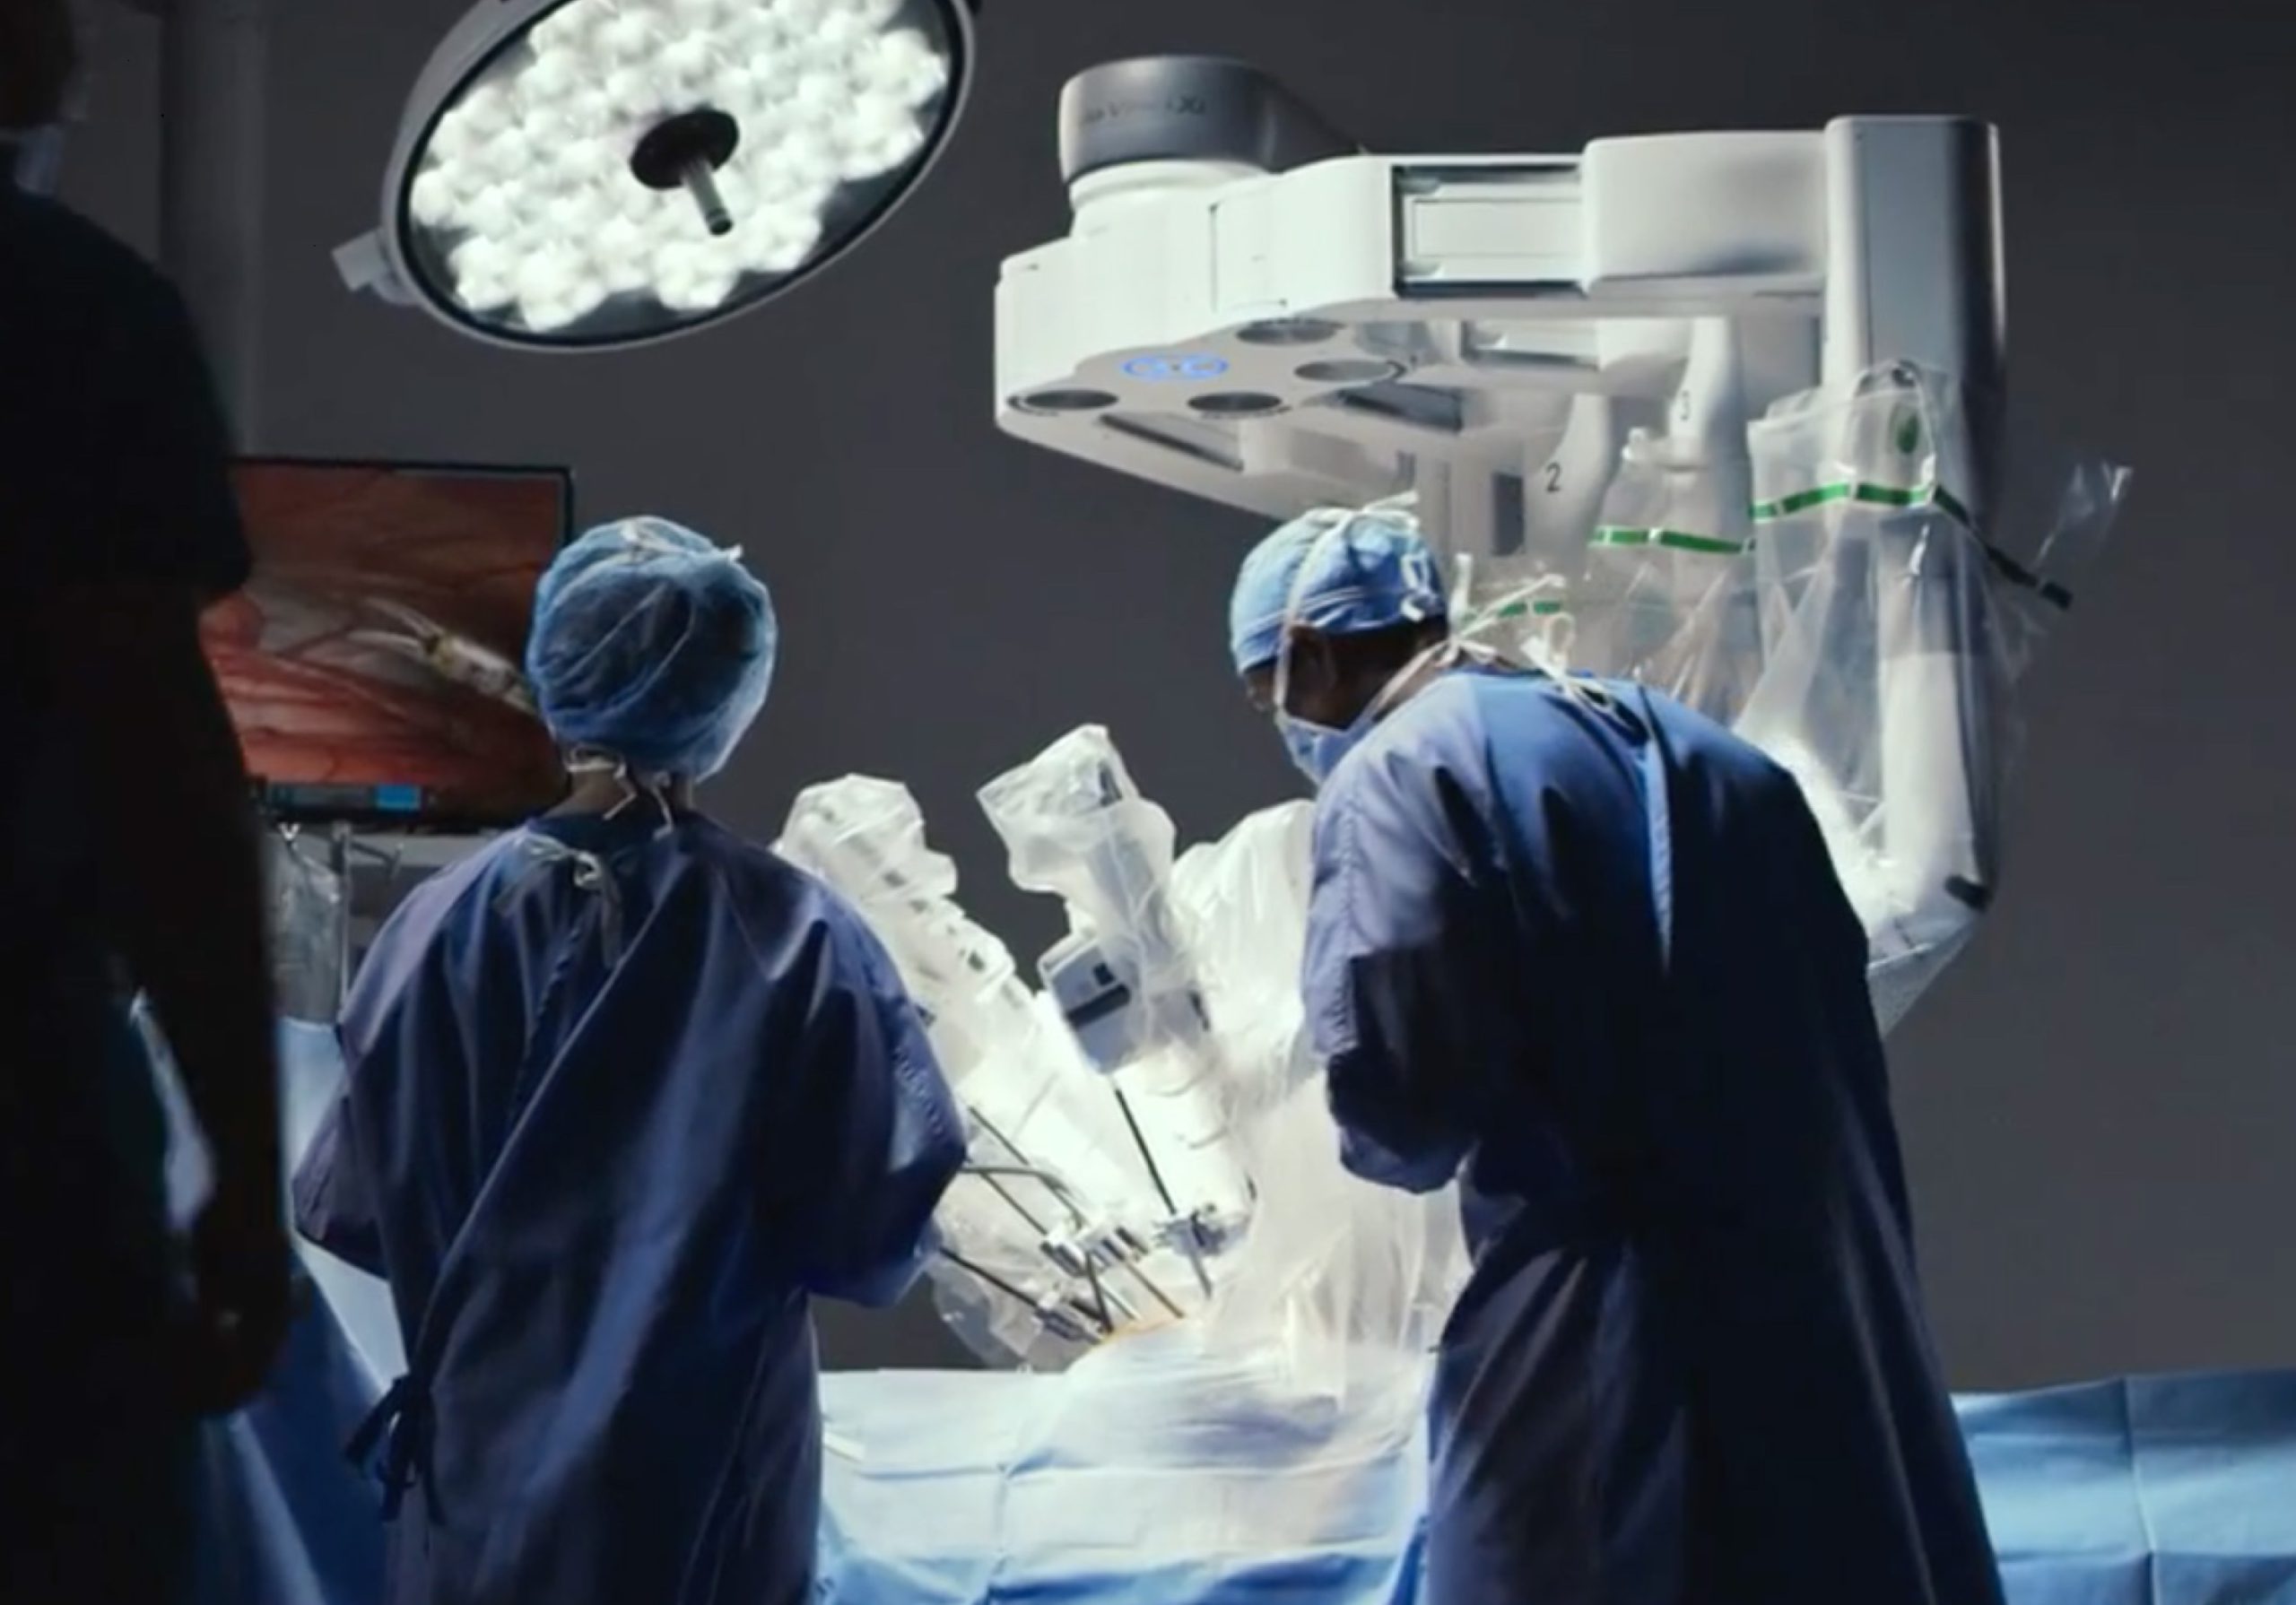 Pro Matre inicia atuação em cirurgia robótica voltada para a saúde da mulher